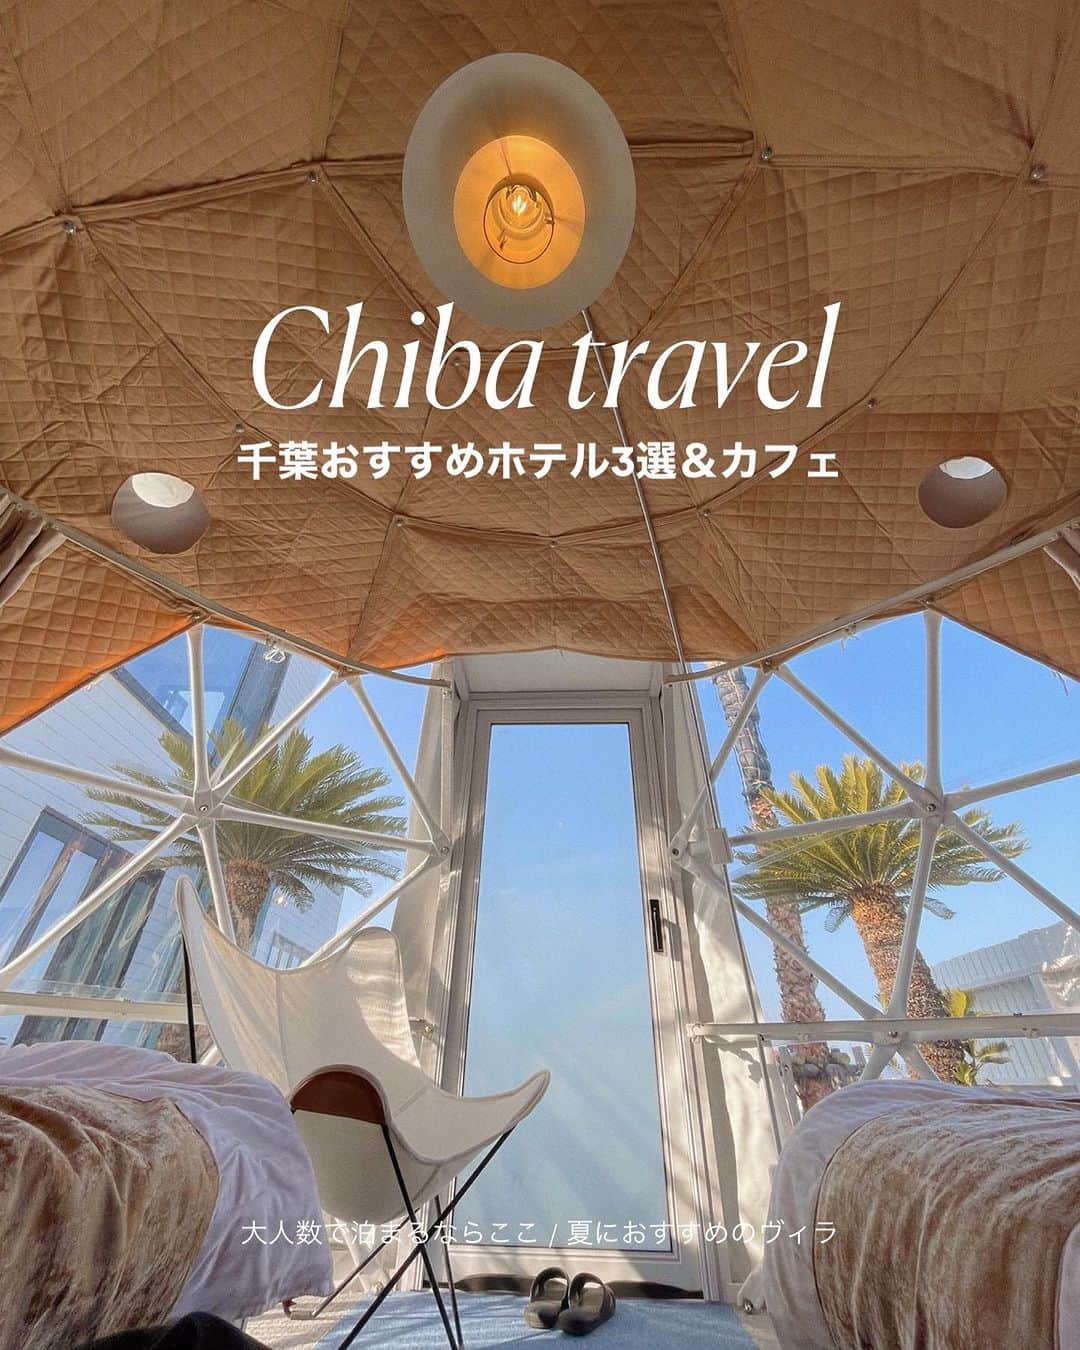 MEGのインスタグラム：「千葉旅行するなら〜 【千葉お洒落ホテルまとめ3選&カフェ】 東京から1、2時間で行ける旅。週末旅におすすめ🌛  📌 UMIno TERRACE VILLA  2022年12月にオープンした海が目の前の一棟貸切ヴィラ。 ・12人で宿泊OK みんなでバーベキューの準備して、bbqしたら、サウナ入ったり、プール入ったり、贅沢が全て揃っている ・調理器具が揃ったキッチンや ベットルームが3つある ・1階のお部屋は、プロジェクターがついてて、カラオケもできる、マイクもあった🫣 ・2階は海がよく見えて朝起きた時の景色が絶景。 ・ドームテントはグランピング気分を味わえる ・非日常感が味わえる、ずっとここでのんびりしていたい ・駐車場4台までOK  (💵/最新: 1泊1人¥1,1000-) 📍千葉県南房総市千倉町川口70-1 (千倉駅より約10分)  📌ホテル　ザ・マンハッタン 3年前から“ホテル女子会”で人気🧸 ・ディズニーリゾートの近くにあるホテル ・大理石のビューバスルーム ・12時レイトチェックアウトOK ・ディズニー行く時や記念日やサプライズにおすすめ ラグジュアリーでかわいい！ (💵/最新:1泊¥~¥14,000-) 📍 千葉県千葉市美浜区ひび野２丁目１０−１  📌 N living the theater.  2023年1月にオープンしたばかりの1日1組限定のサウナ付きヴィラ。 ・4人までOK ・人工芝が敷かれた庭にはサウナがある 激アツサウナに入った後は外から入れるお風呂に直行。 ・ヴィラの内装は、白く韓国っぽインテリアがおしゃれ ・1階にも2階にもプロジェクターがある！ 1階はソファーで、2階は寝ながらNetflix を ・この時は家族と行ったけどグループ旅行でもいいな〜と ・調理器具が揃った大きなオープンキッチンでみんなで料理して楽しかった🍴 ・徒歩5分で海(一宮海岸)にも行ける🏝️ ・ペット同伴可でワンちゃんと一緒に泊まれる🐶  📍千葉県白子町一宮10194-1-A1 (💵/最新:1人1泊¥9,500~)  📌 The rising sun coffee .  九十九里にあるサーフショップに隣接する白いデッキがあるカフェ。 ・オリジナルコーヒーの焙煎やグッズが大人気 ・ネットでは”コーヒーサブスクリプション“もある ・行った時は夏じゃないのに、続々と人が入ってきた人気なカフェ  Open / 11:00-18:00 📍千葉県大網白里市駒込179－10 ____________________________________ 《新時代のSNS》 Lemon8 では“そこにしかないホテルの魅力”を発信しています🍋  次の旅行先はどこへ行こう、 “まだあまり知られていないホテル” を【 meg_hotel 】の投稿で探してみて下さい🩵 ____________________________________ #千葉旅行 #千葉観光 #千葉ホテル   #ホテル #ホテルステイ  #国内ホテル #カップル旅行 #グループ旅行 #旅行 #お洒落ホテル #一棟貸し #ヴィラ #犬と泊まれる宿 #貸別荘 #グランピング  #lemon8  #lemon8japan #lemon8でお出かけ」